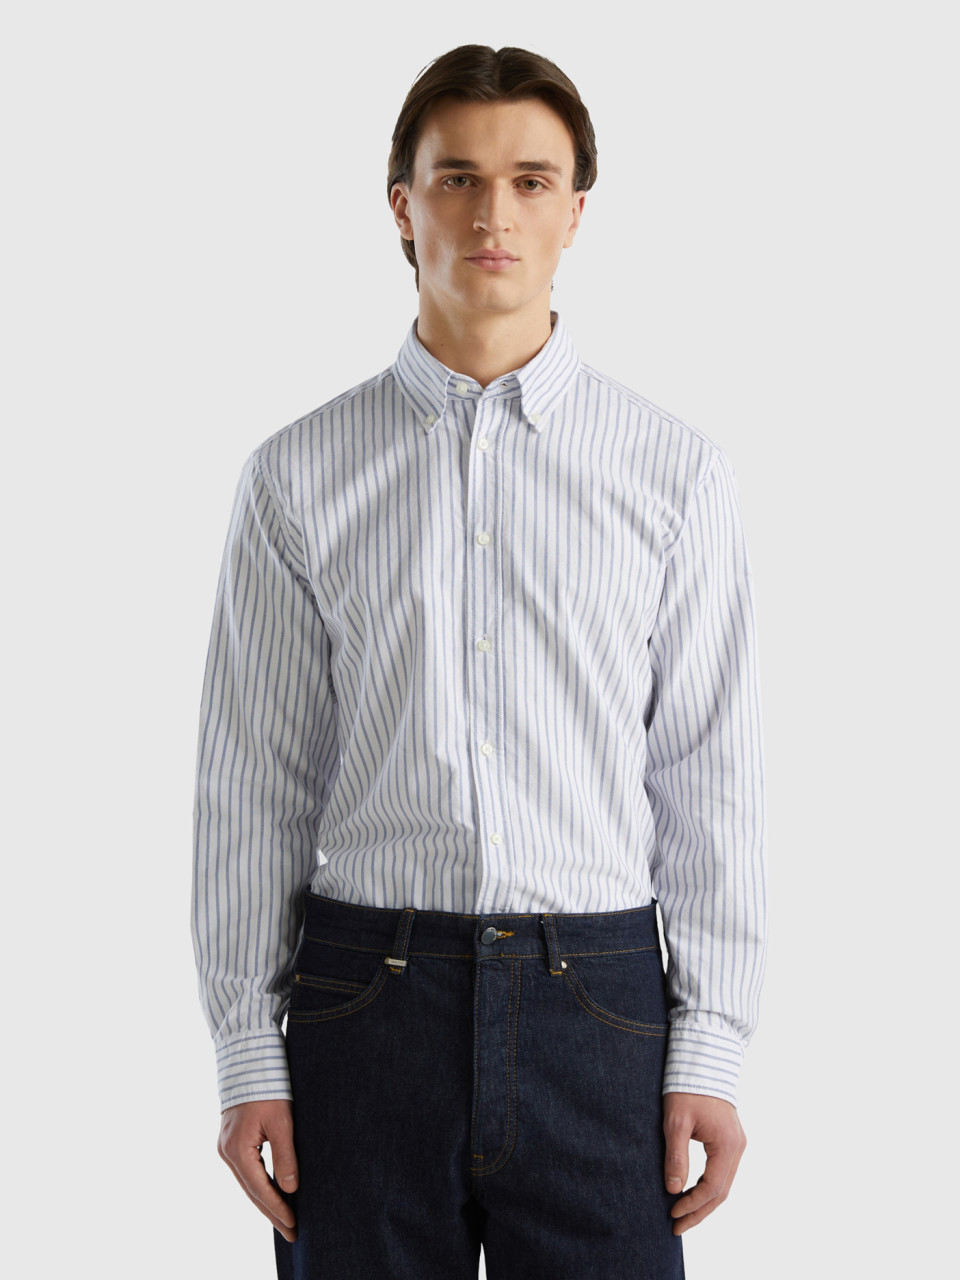 Benetton, 100% Cotton Striped Shirt, Light Blue, Men